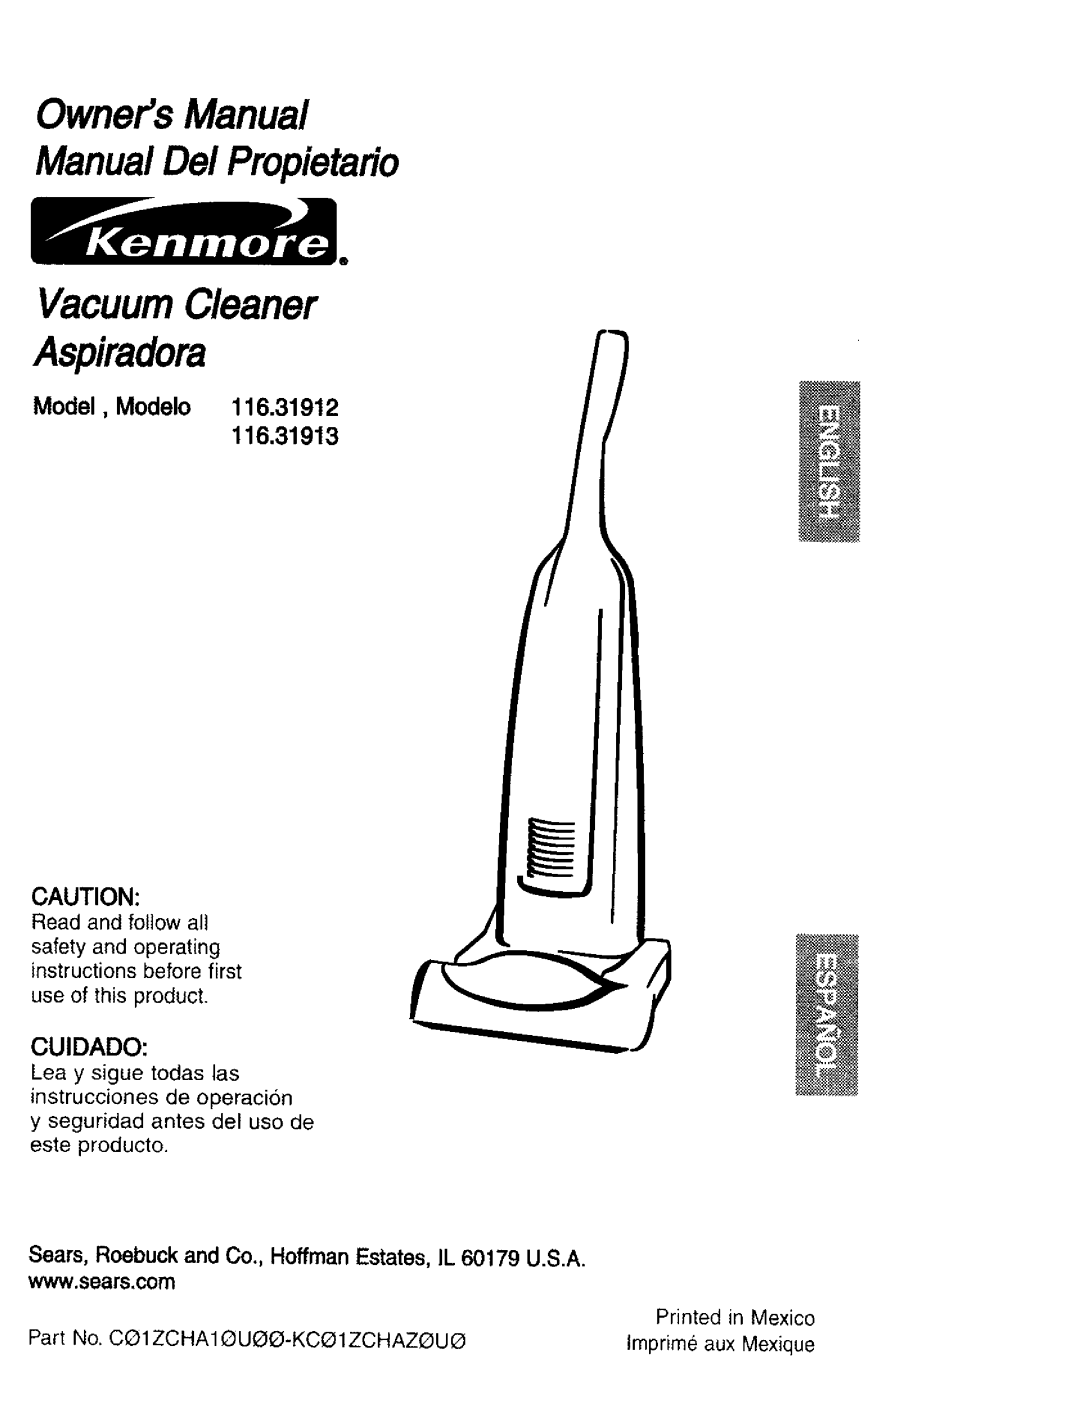 Kenmore 116.31913 owner manual ManualDel Propietario, Model, Modelo 116.31912 116,31913, Cuidado, Read and follow all 